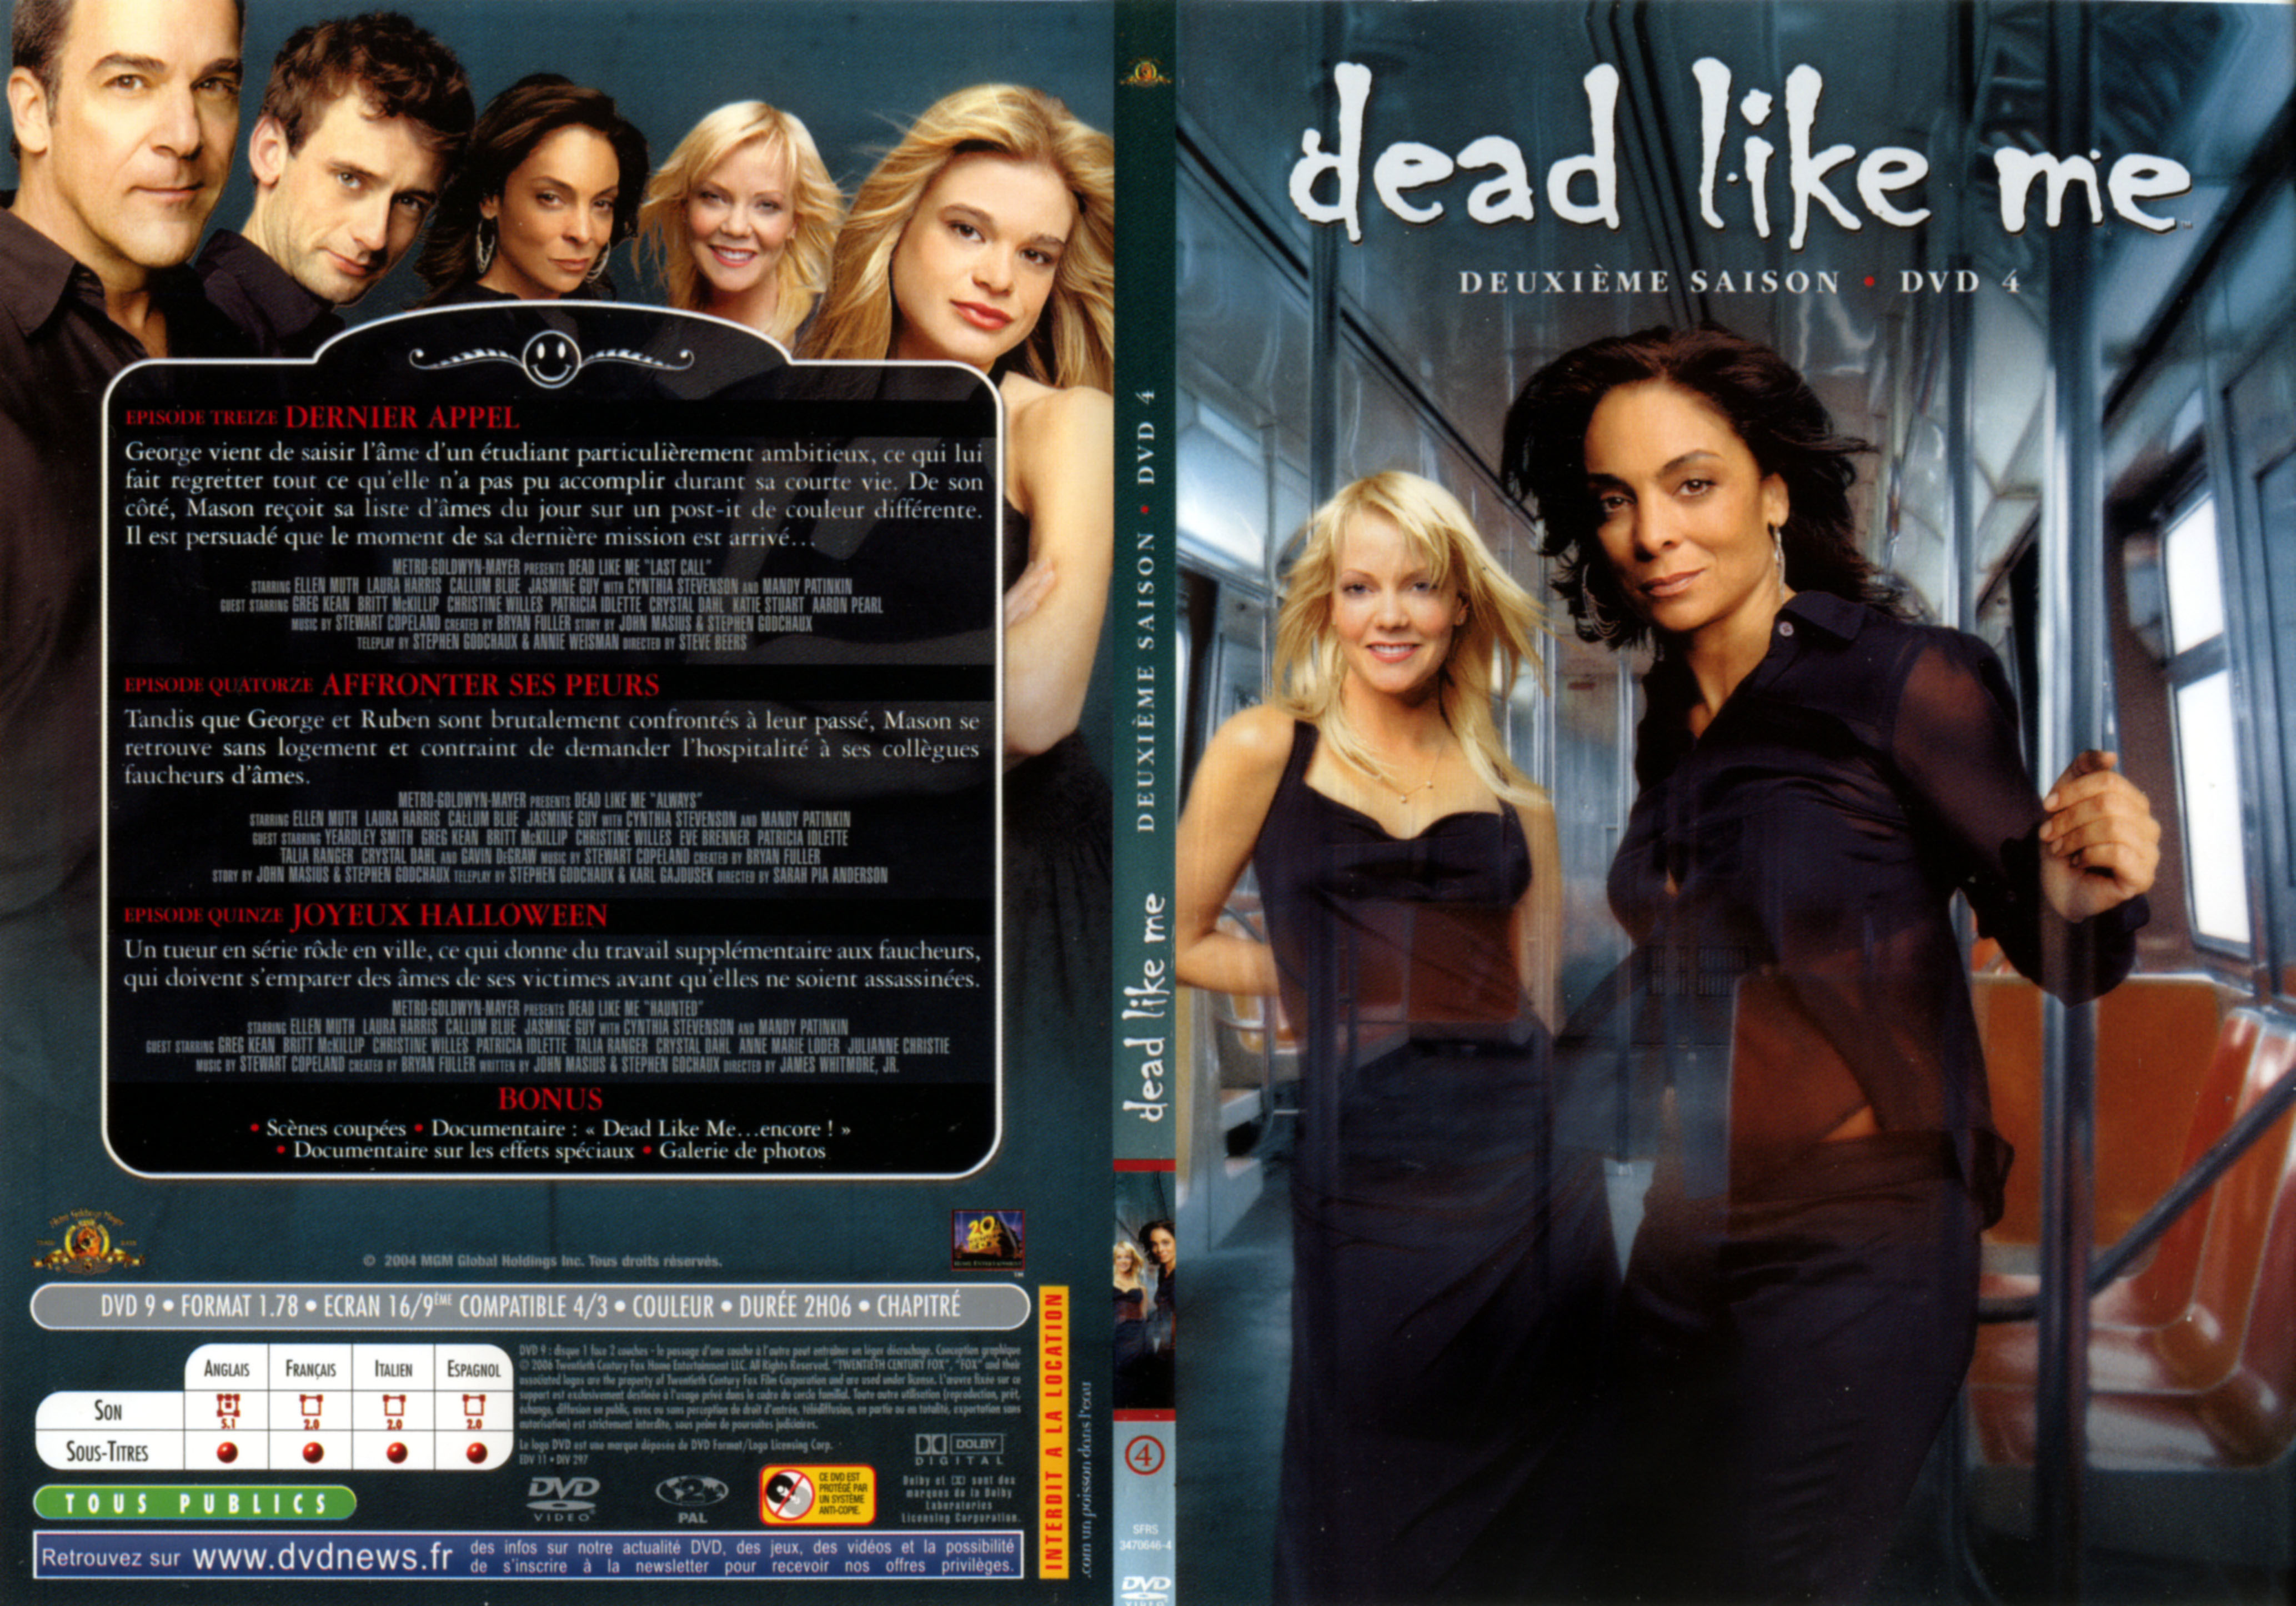 Jaquette DVD Dead like me Saison 2 DVD 4